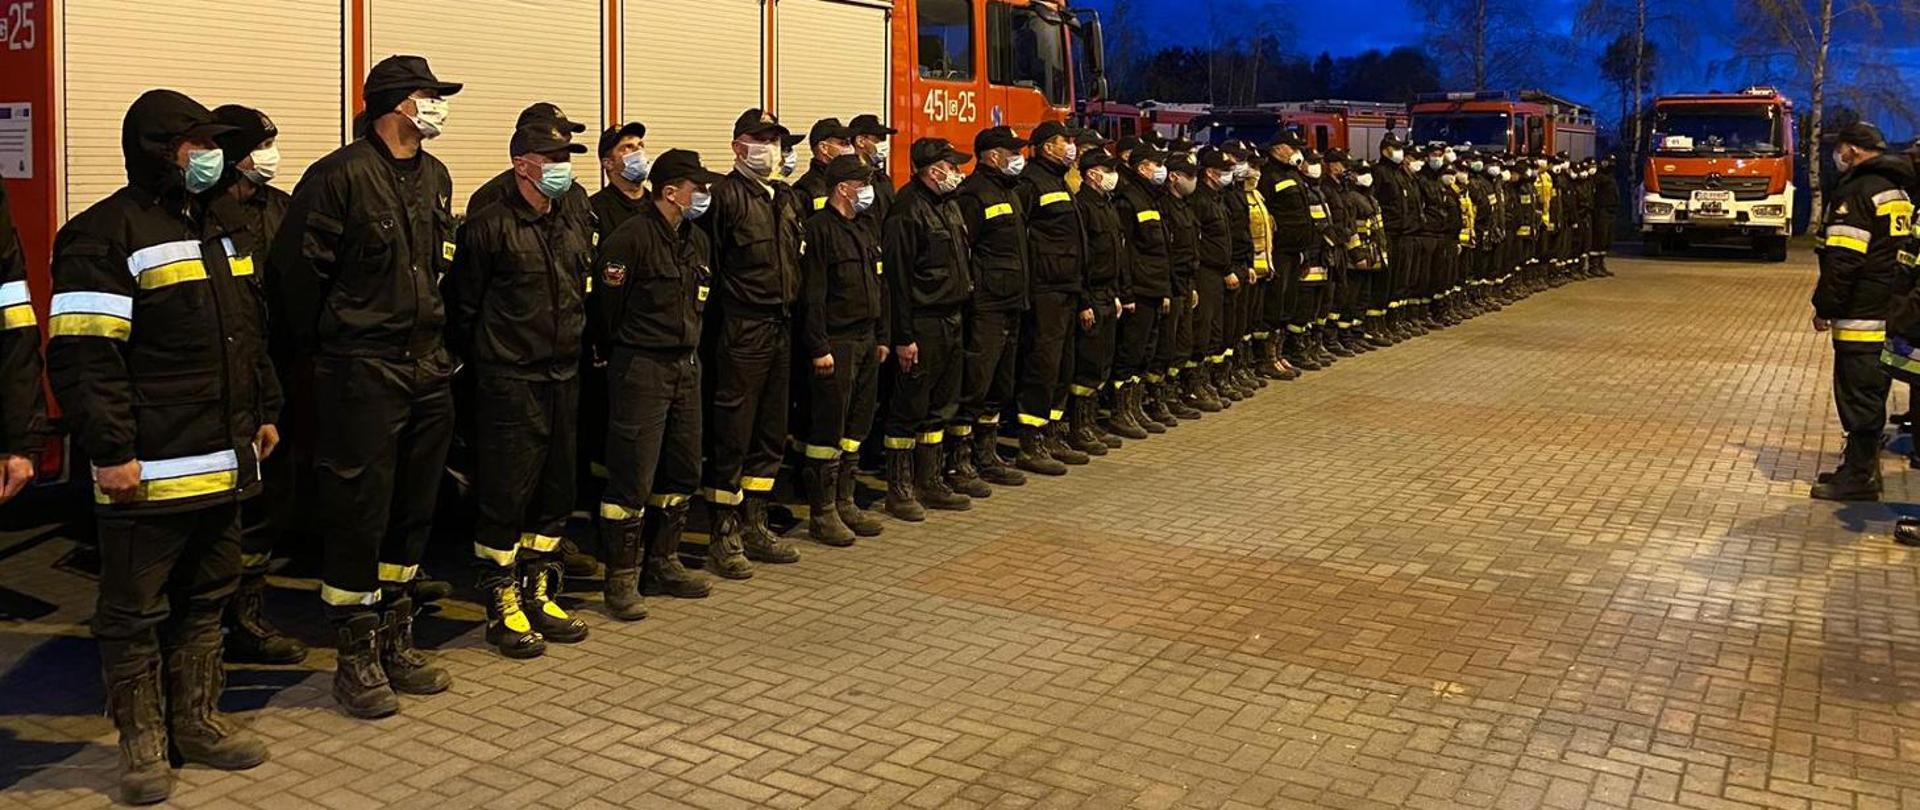 Zdjęcie przedstawia strażaków w mundurach koszarowych z maseczkami na twarzach, nustawionych w dwuszereg na tle samochodu pożarniczego.